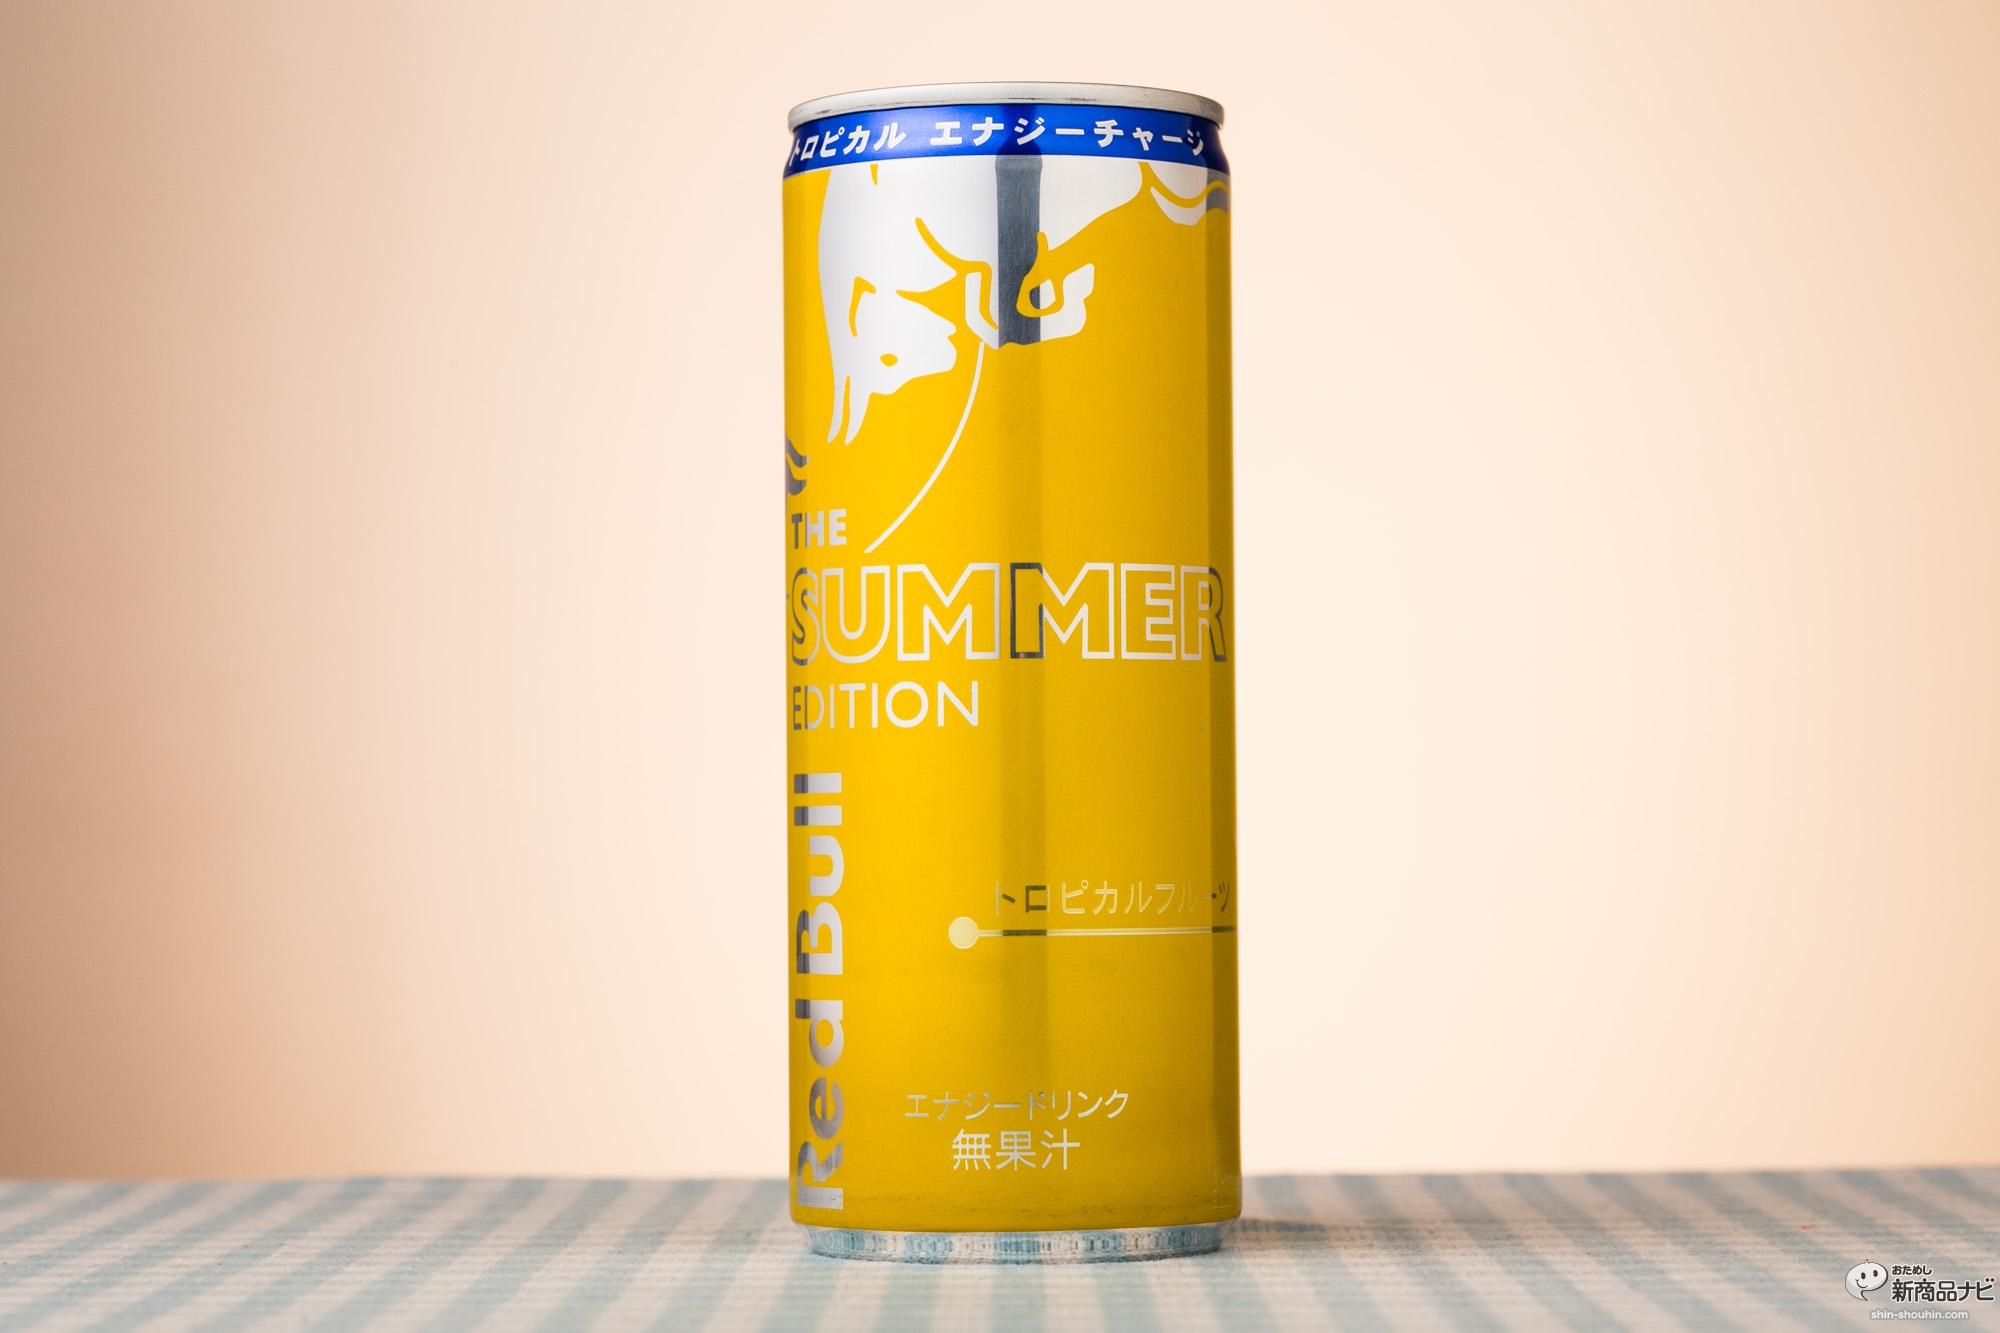 おためし新商品ナビ Blog Archive レッドブルに サマーエディション が登場 すっきりビタミン飲料的な飲みやすさで夏の翼を生やせ